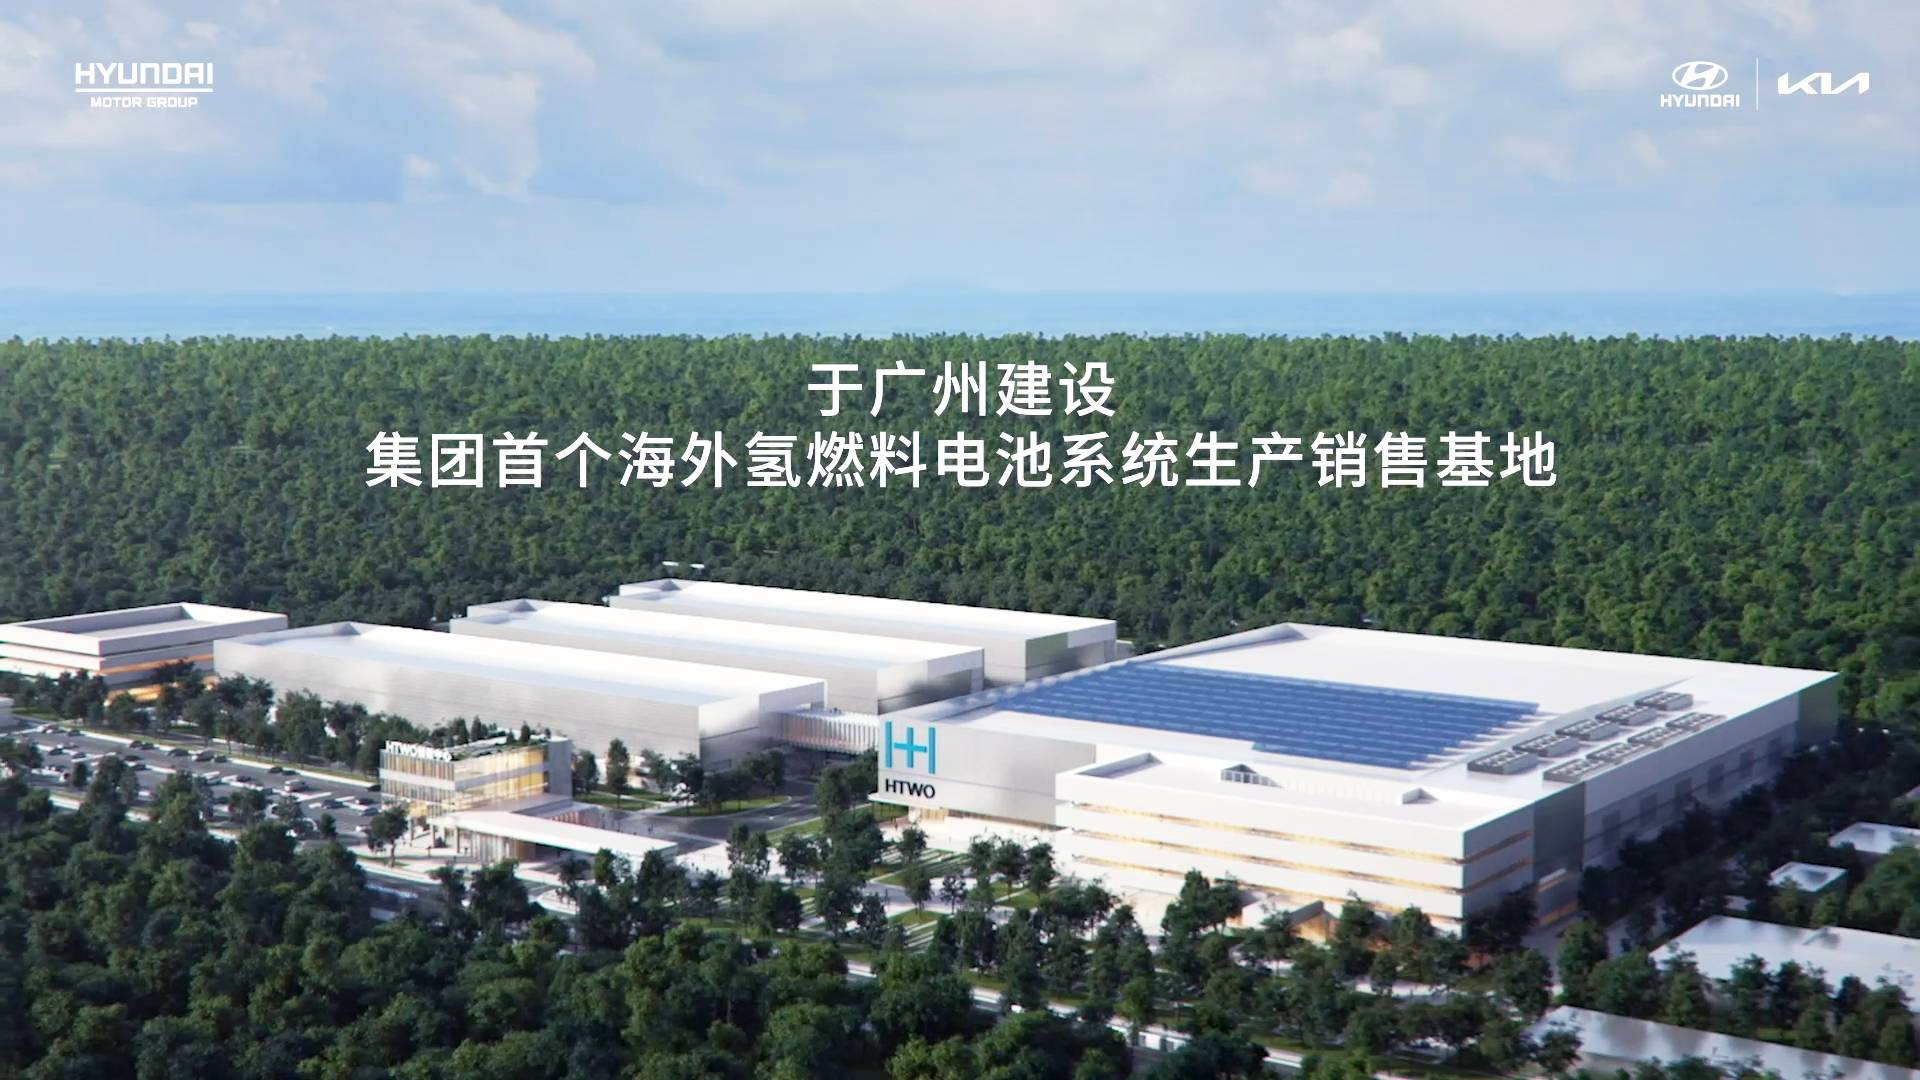 现代汽车集团广州氢燃料电池系统生产销售基地/现代·起亚官方